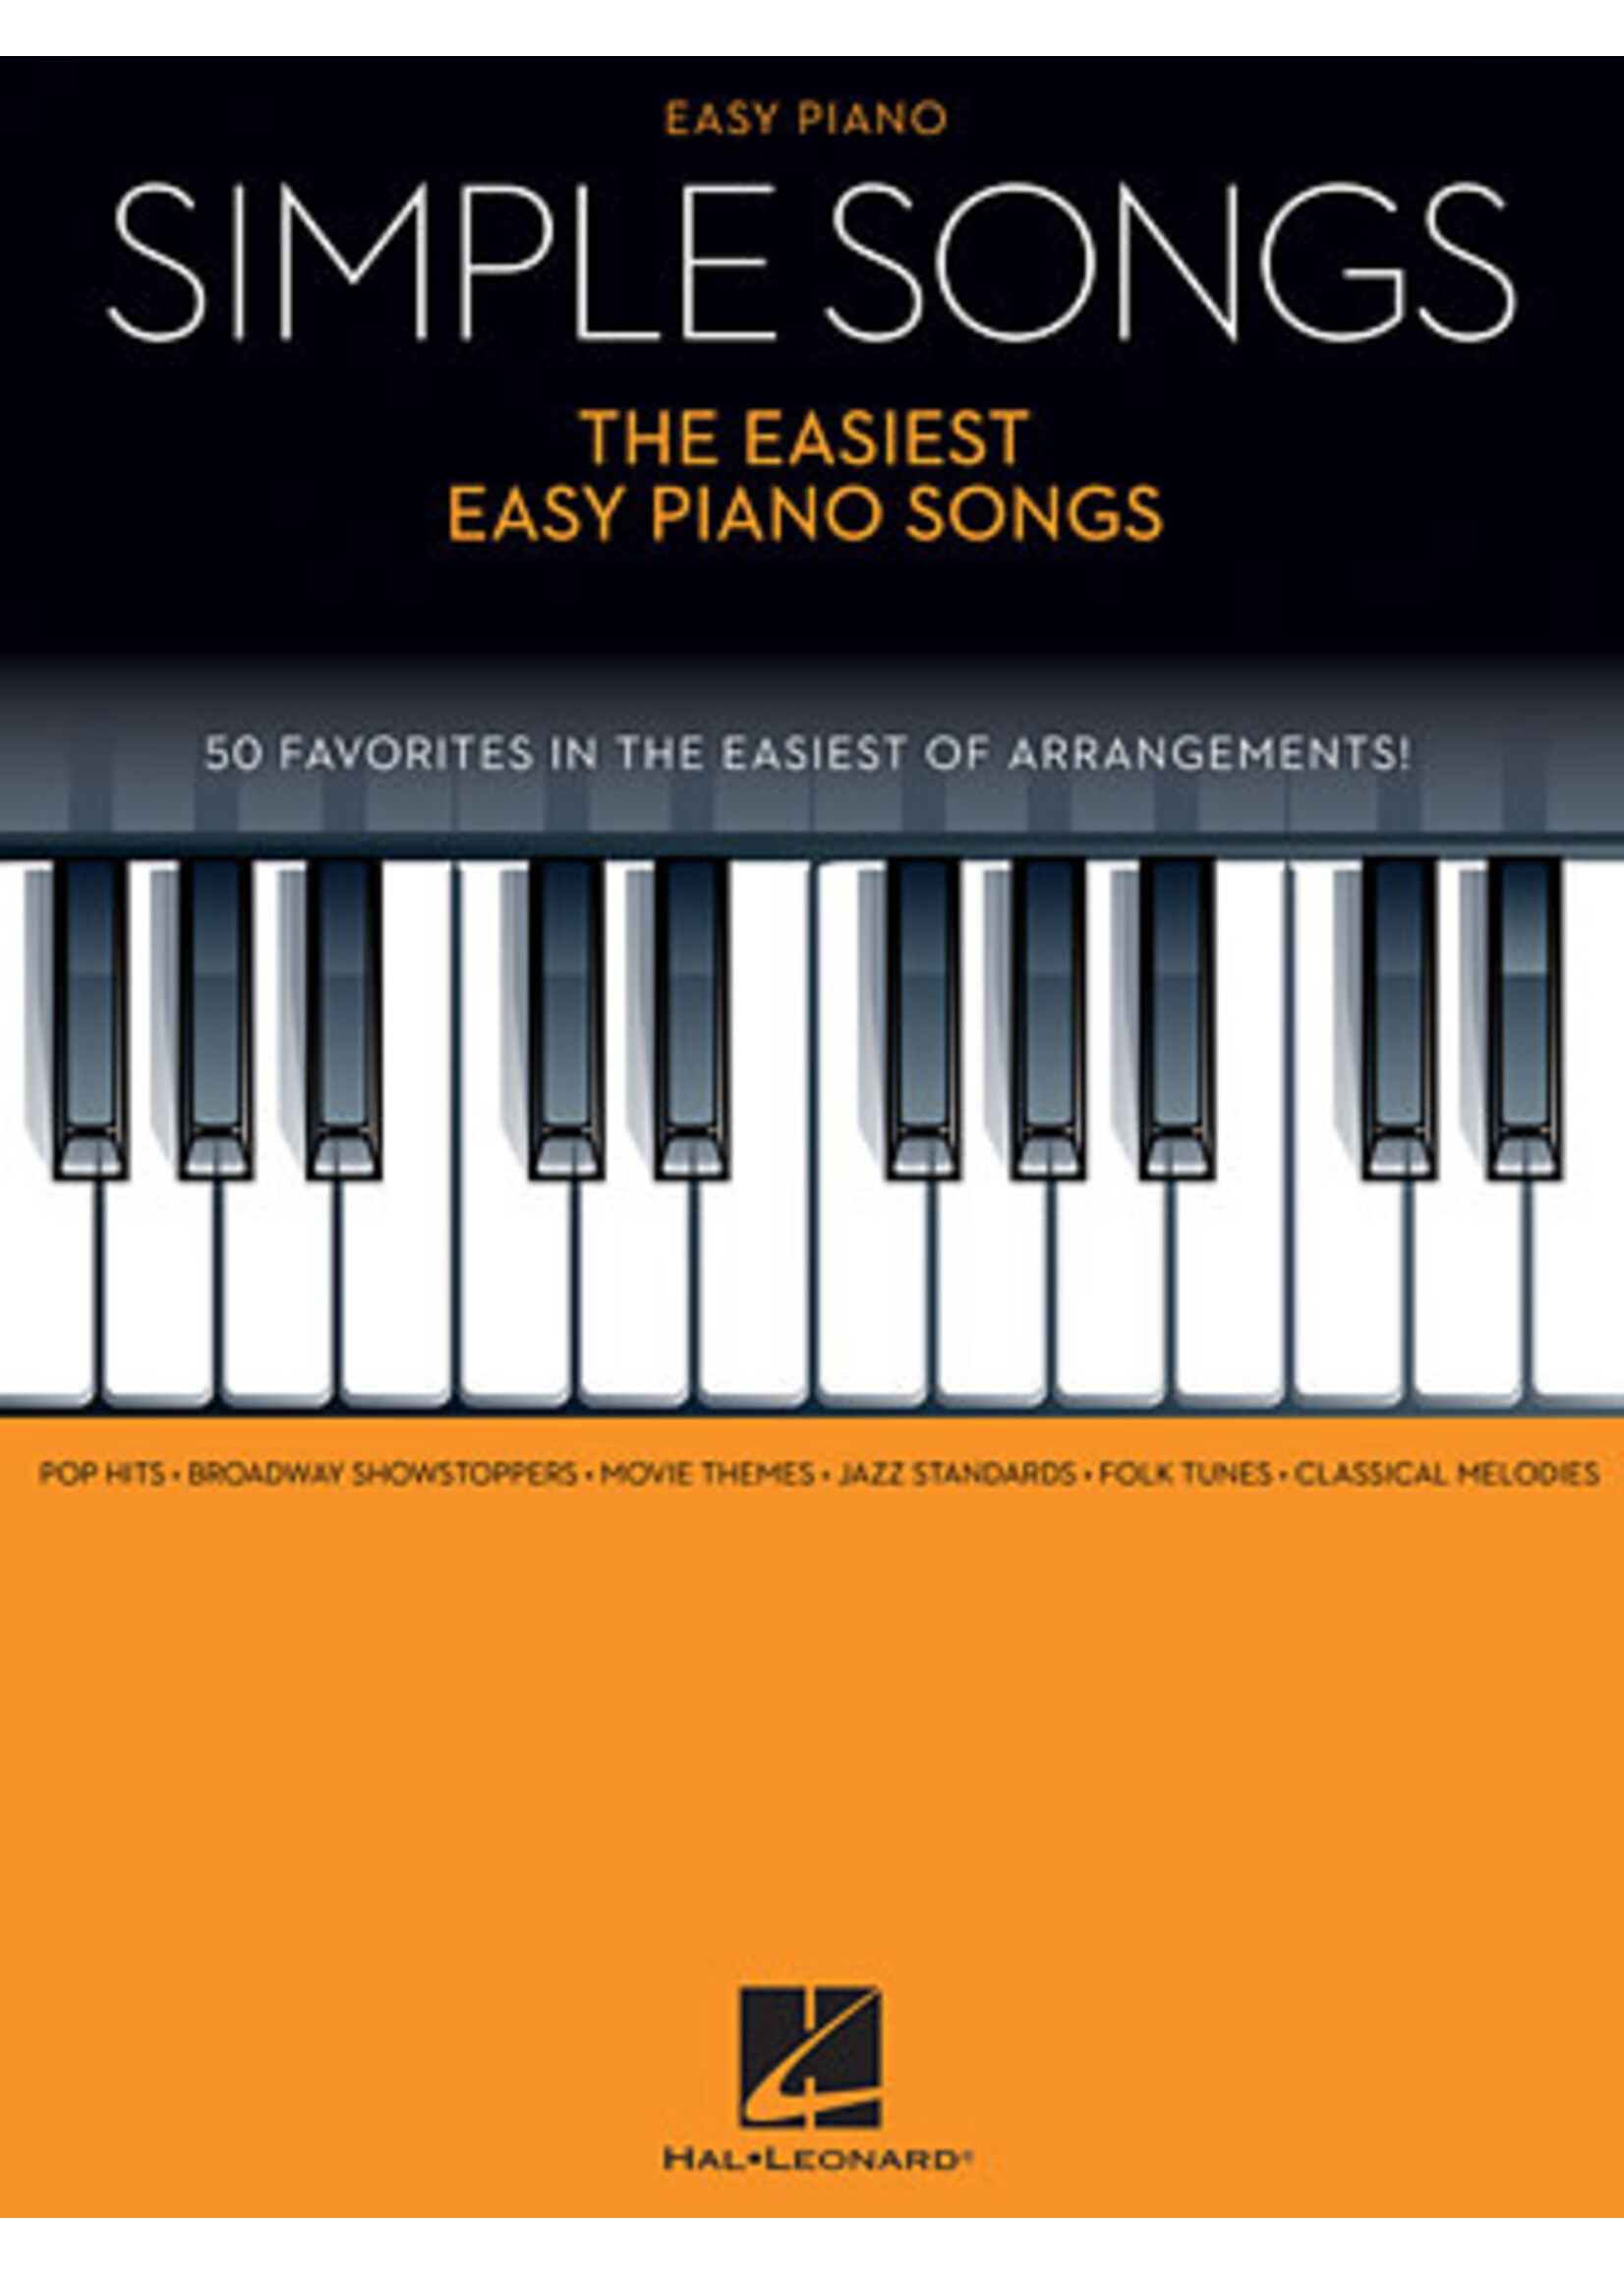 Hal Leonard Simple Songs - The Easiest Easy Piano Songs